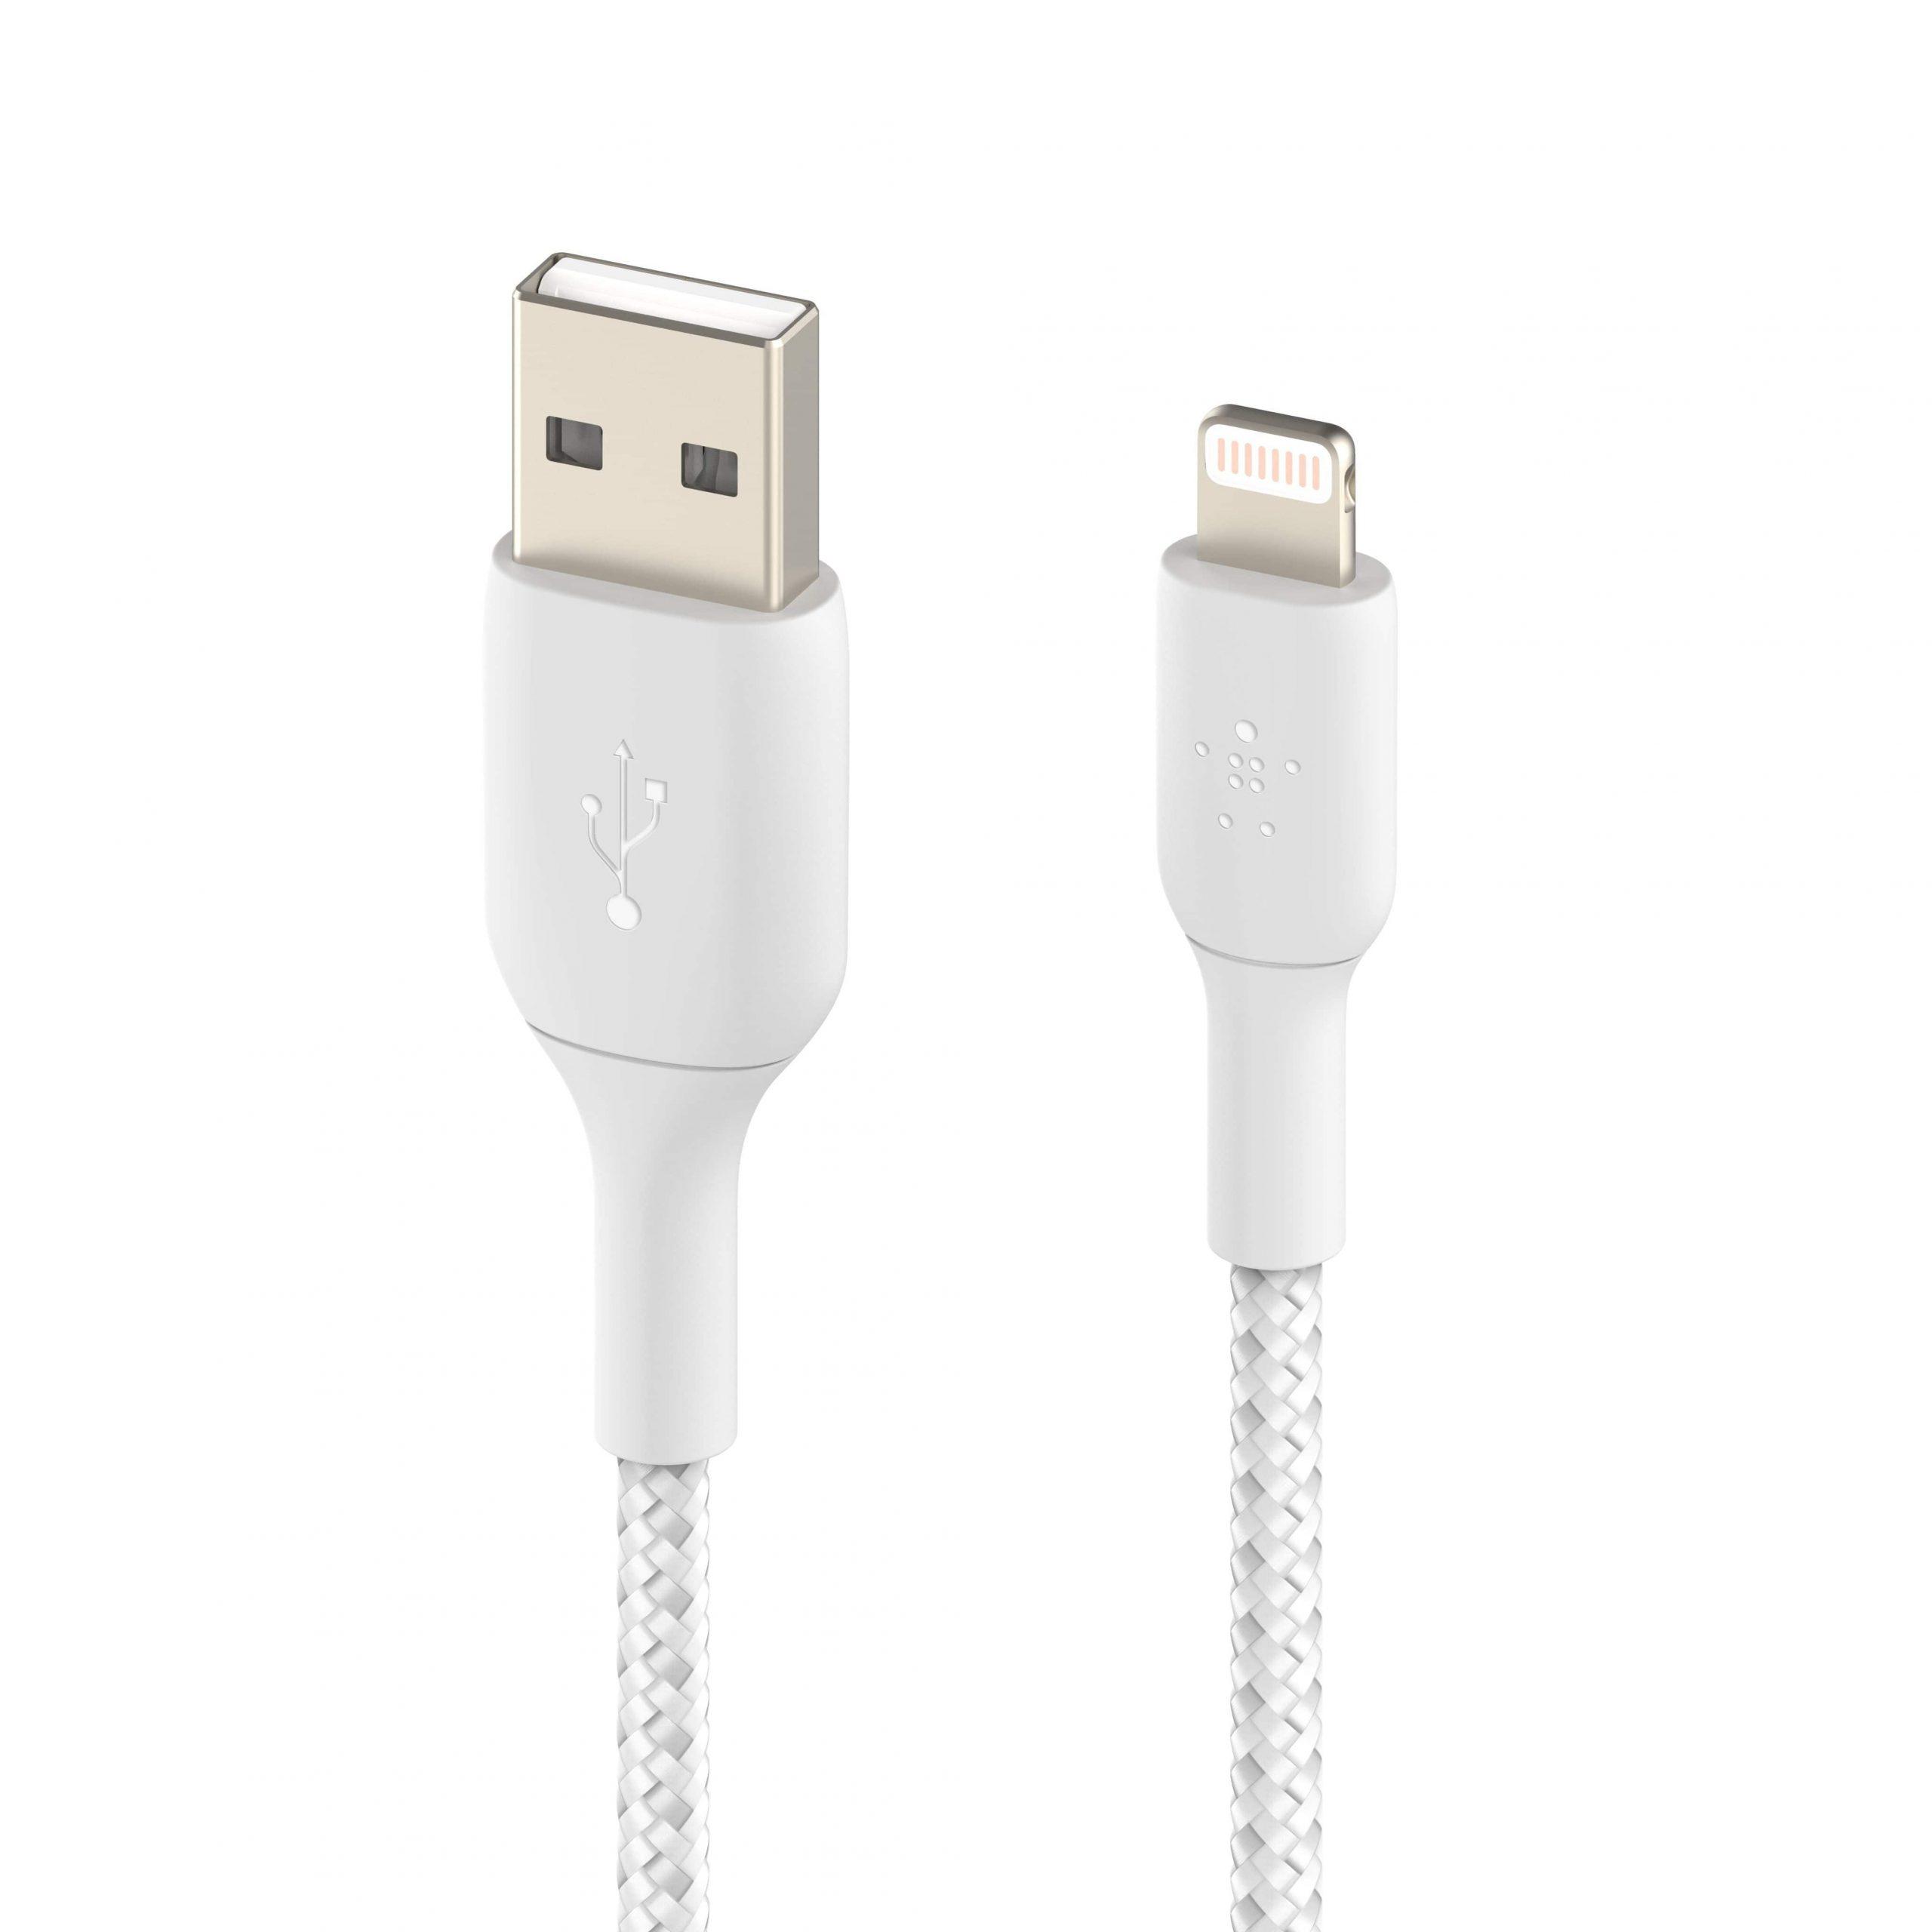 وصلة شاحن (كيبل شحن) بمدخل USB-A و منفذ Lightning للآيفون و الآيباد 3 متر أبيض Belkin - Boost Charge USB-A to Lightning Braided Cable - cG9zdDo1NTc1Ng==